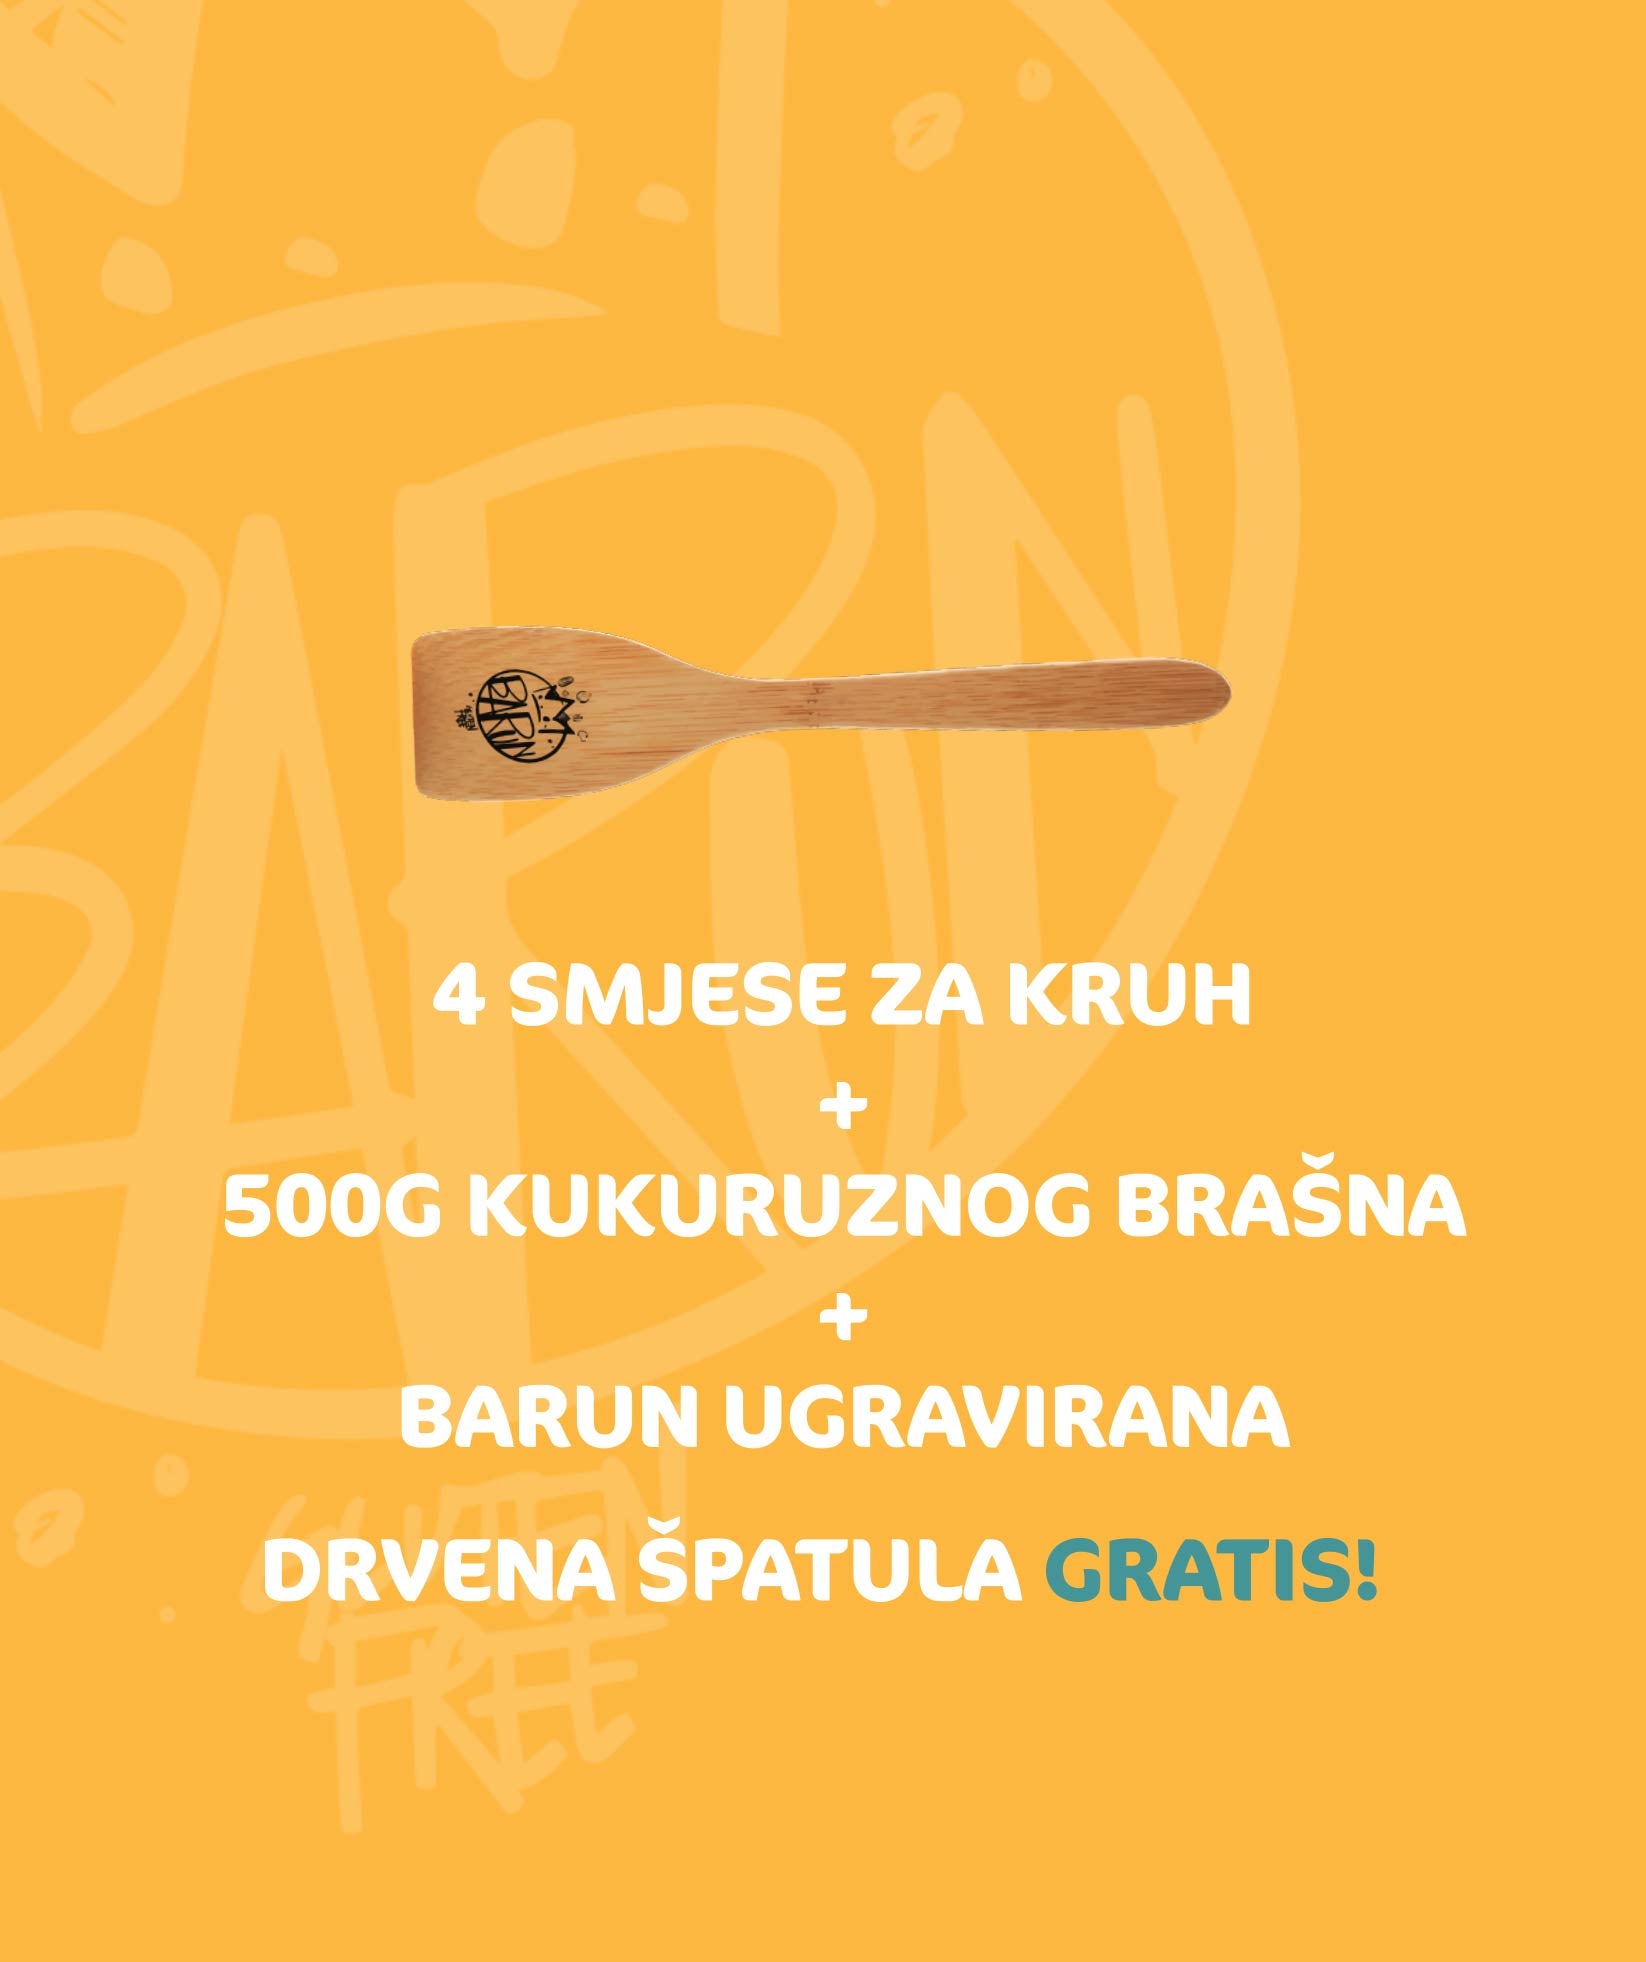 Proljetni bezglutenski paket: 4 mješavine + brašno + GRATIS špatula - Barun